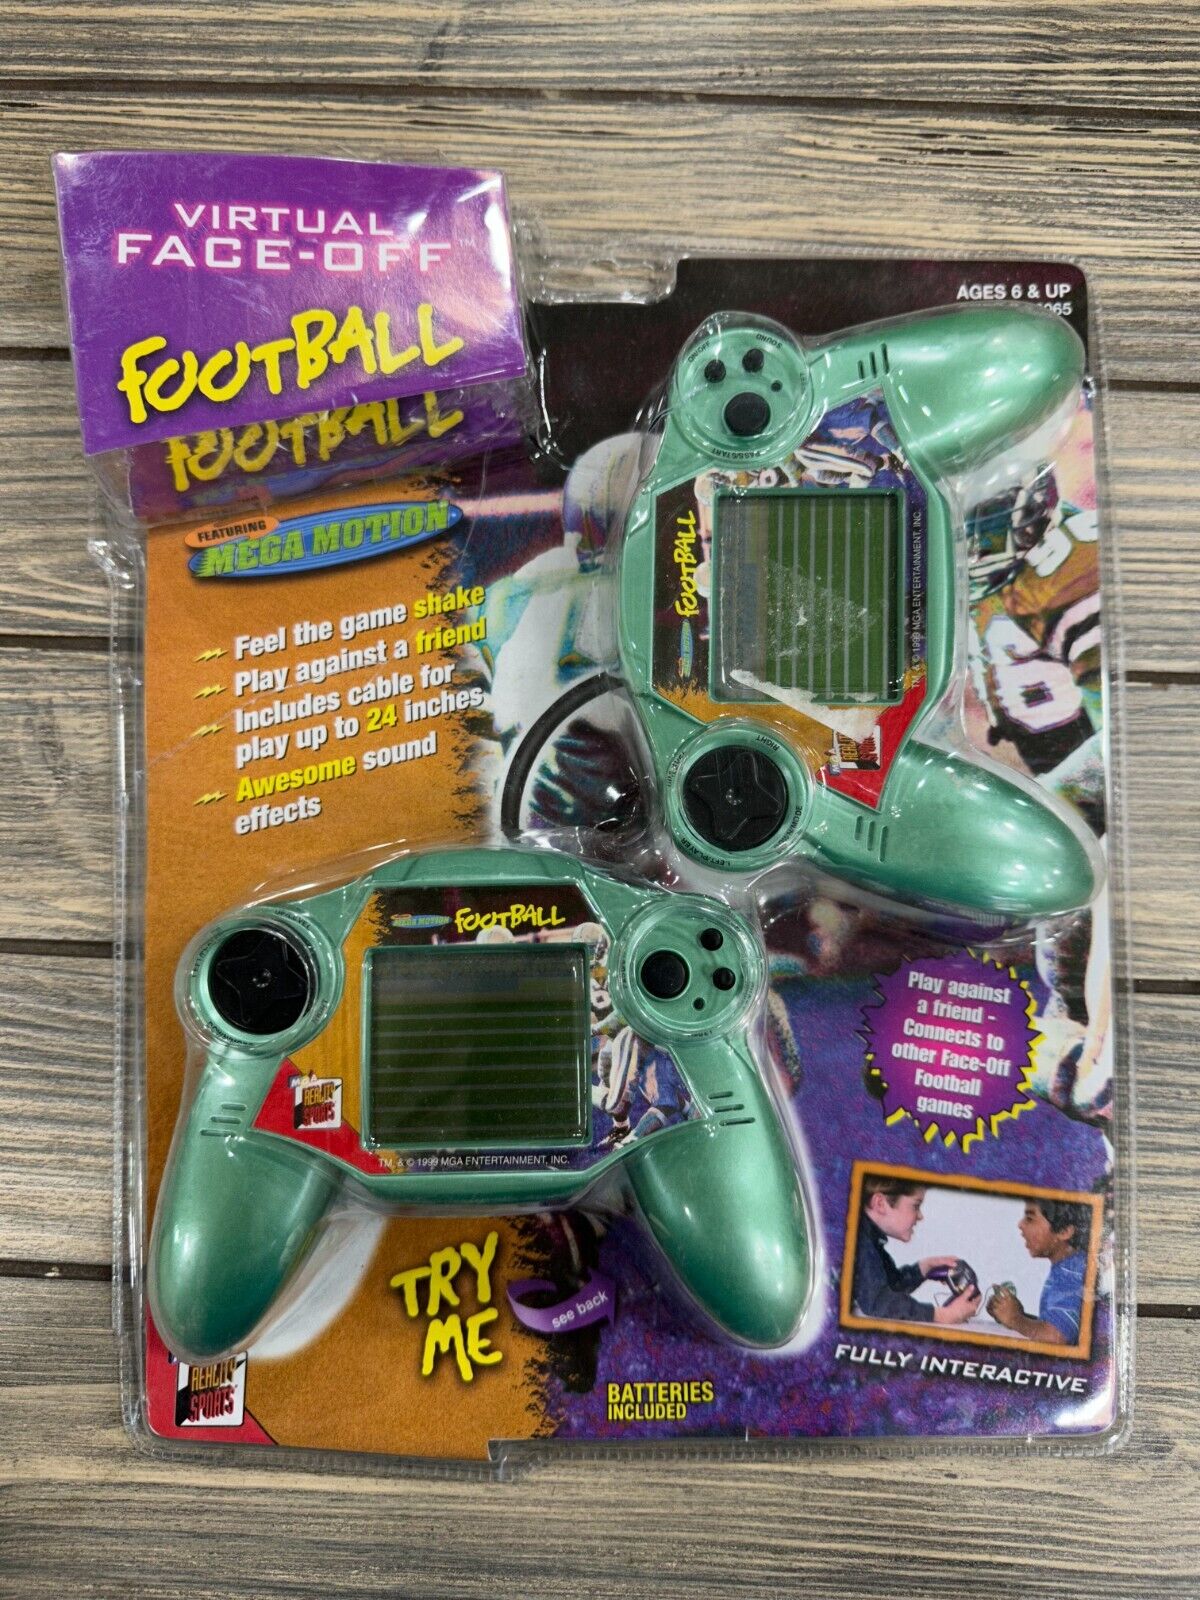 Rare 1999 MGA Reality Sports Handheld Virtual Faceoff Football Mega Motion